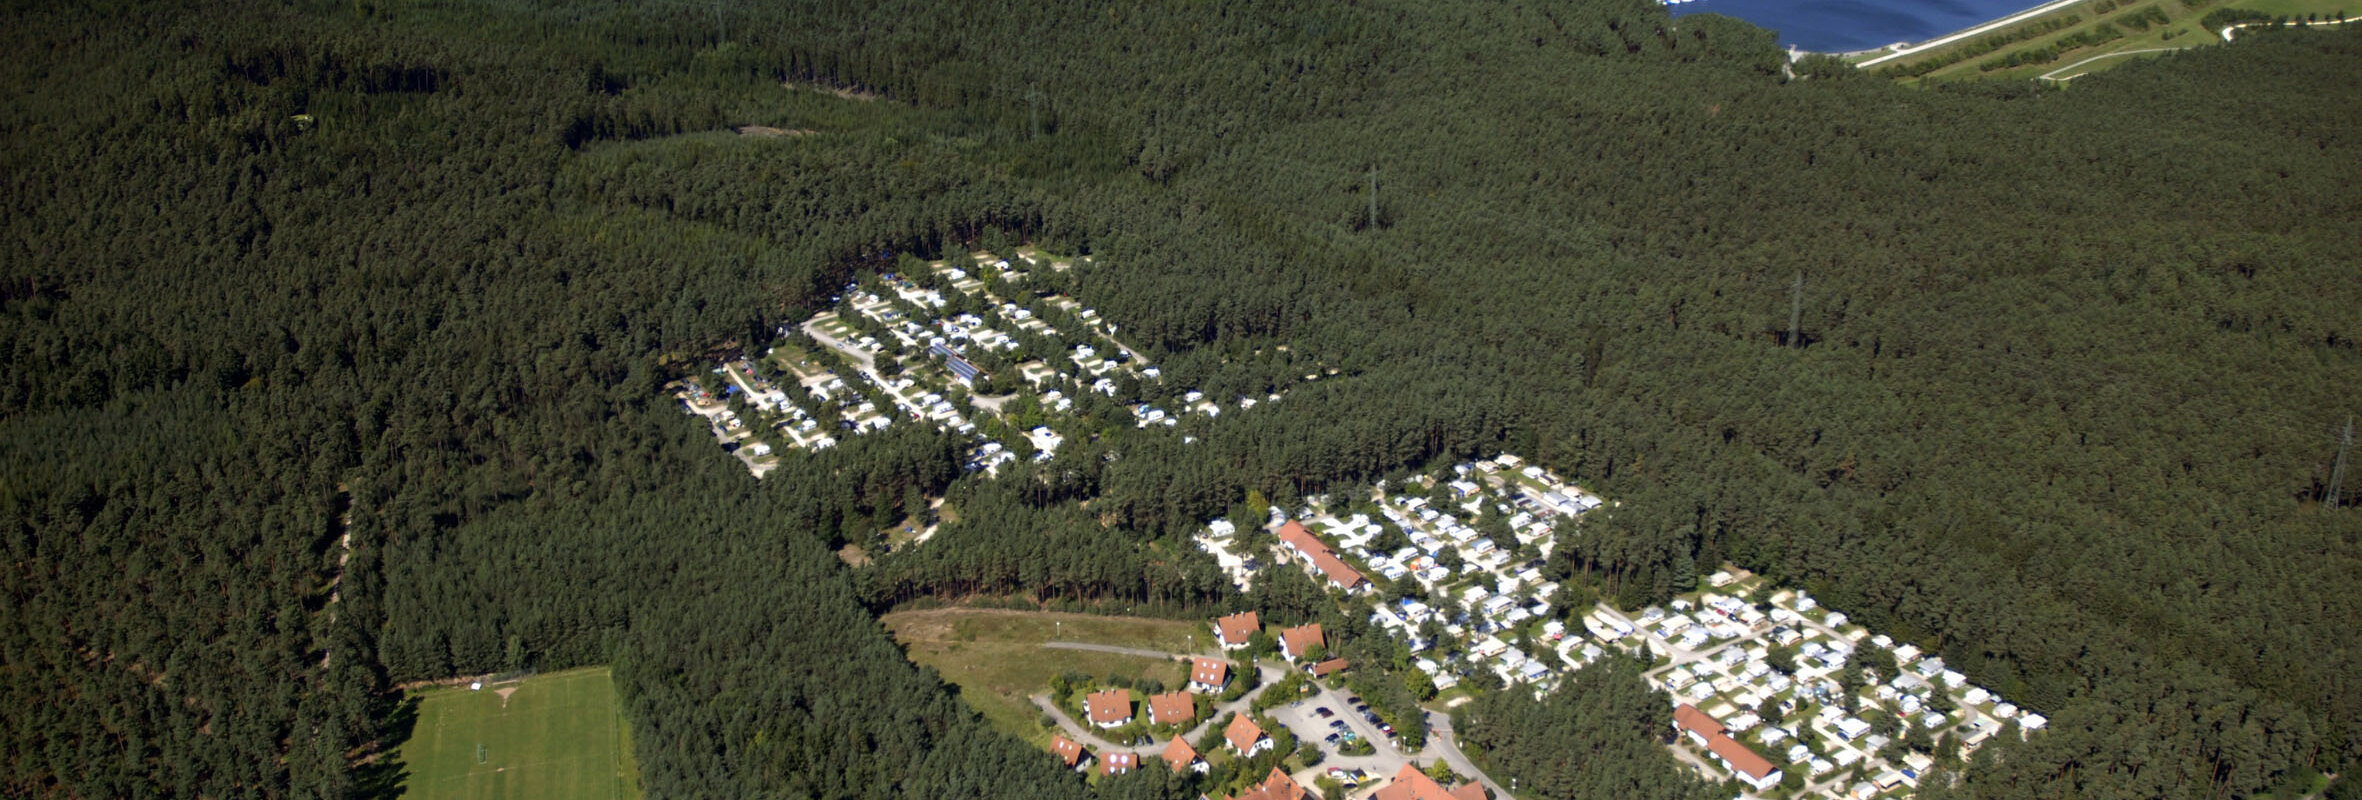 Luftaufnahme des barrierefreien Campingplatz Waldcamping Brombach in Pleinfeld